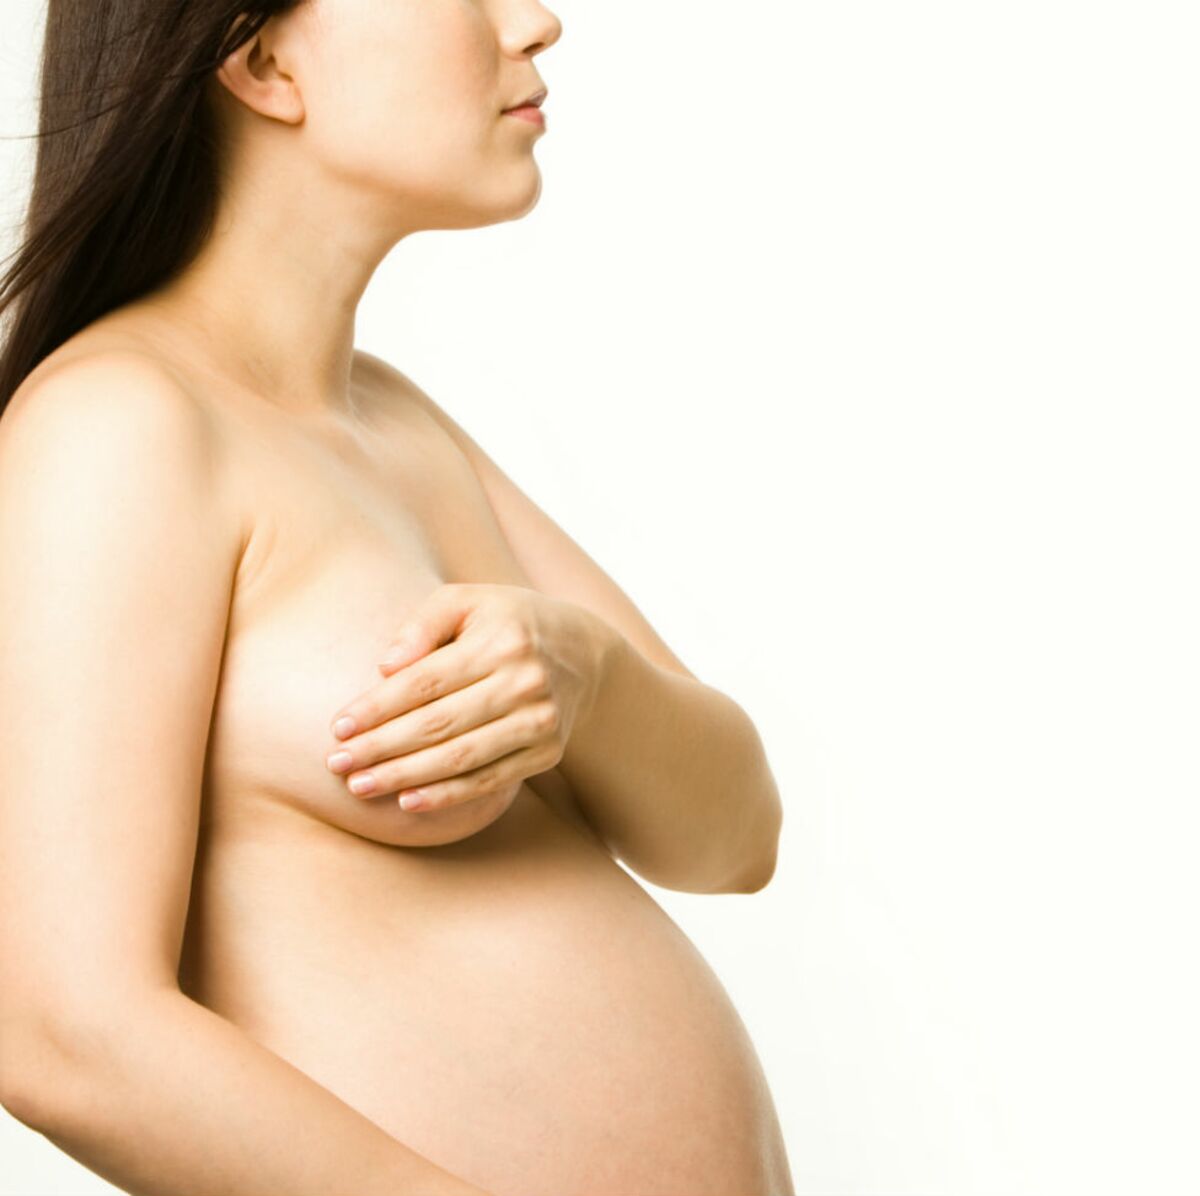 вены на груди при беременности на ранних сроках фото 4